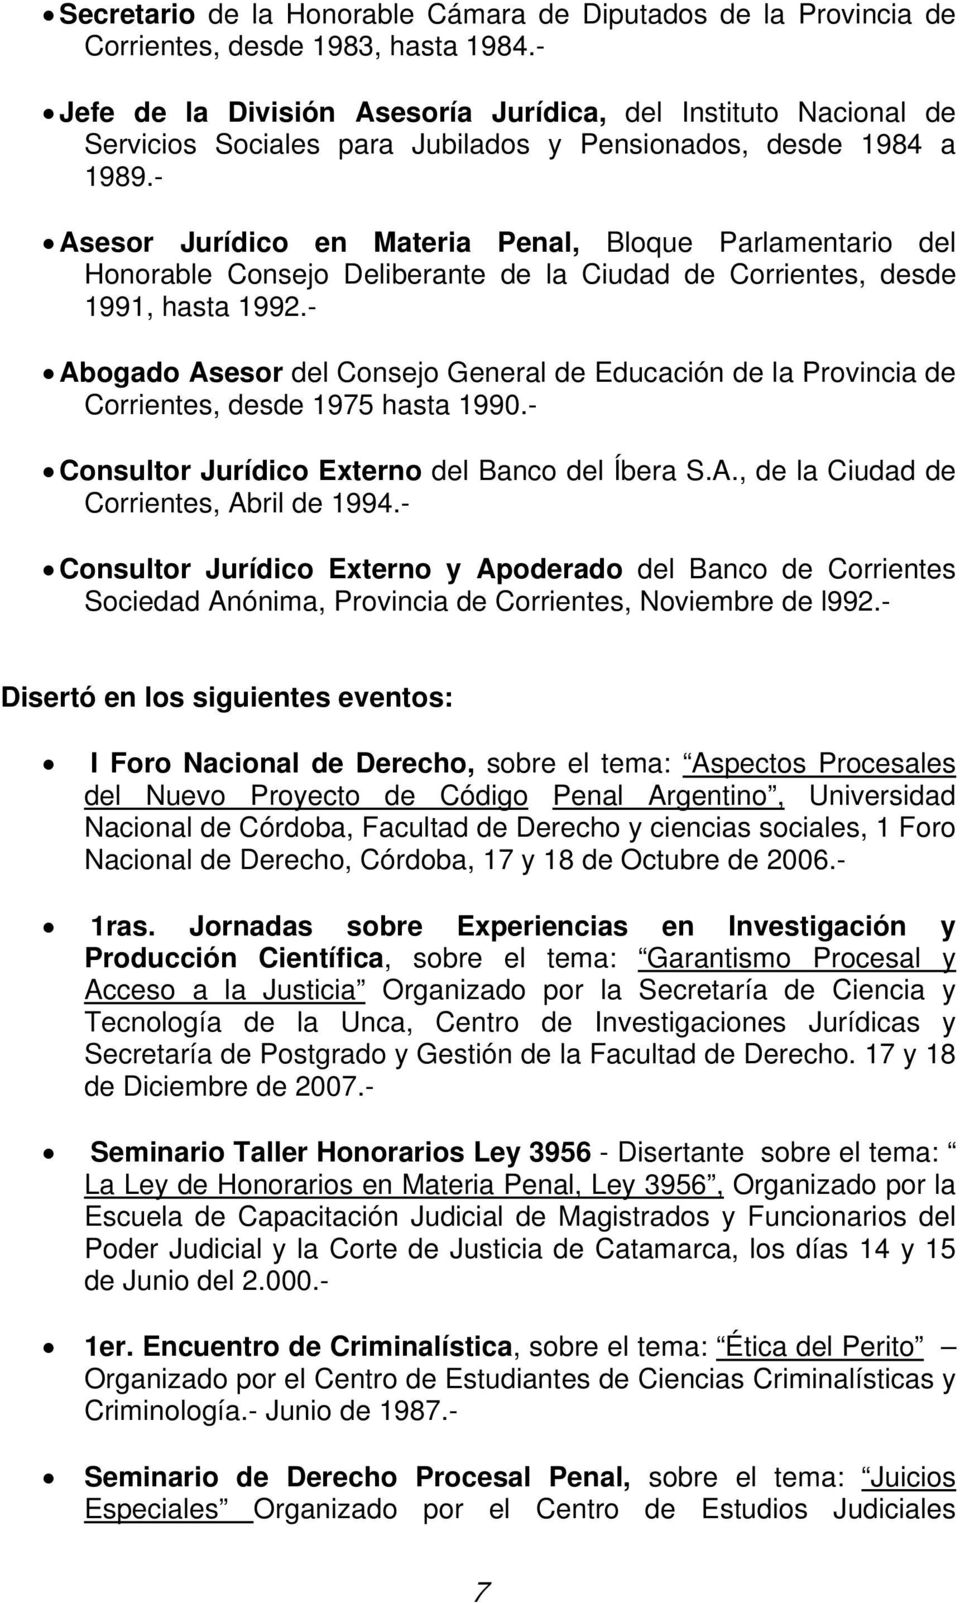 - Asesor Jurídico en Materia Penal, Bloque Parlamentario del Honorable Consejo Deliberante de la Ciudad de Corrientes, desde 1991, hasta 1992.